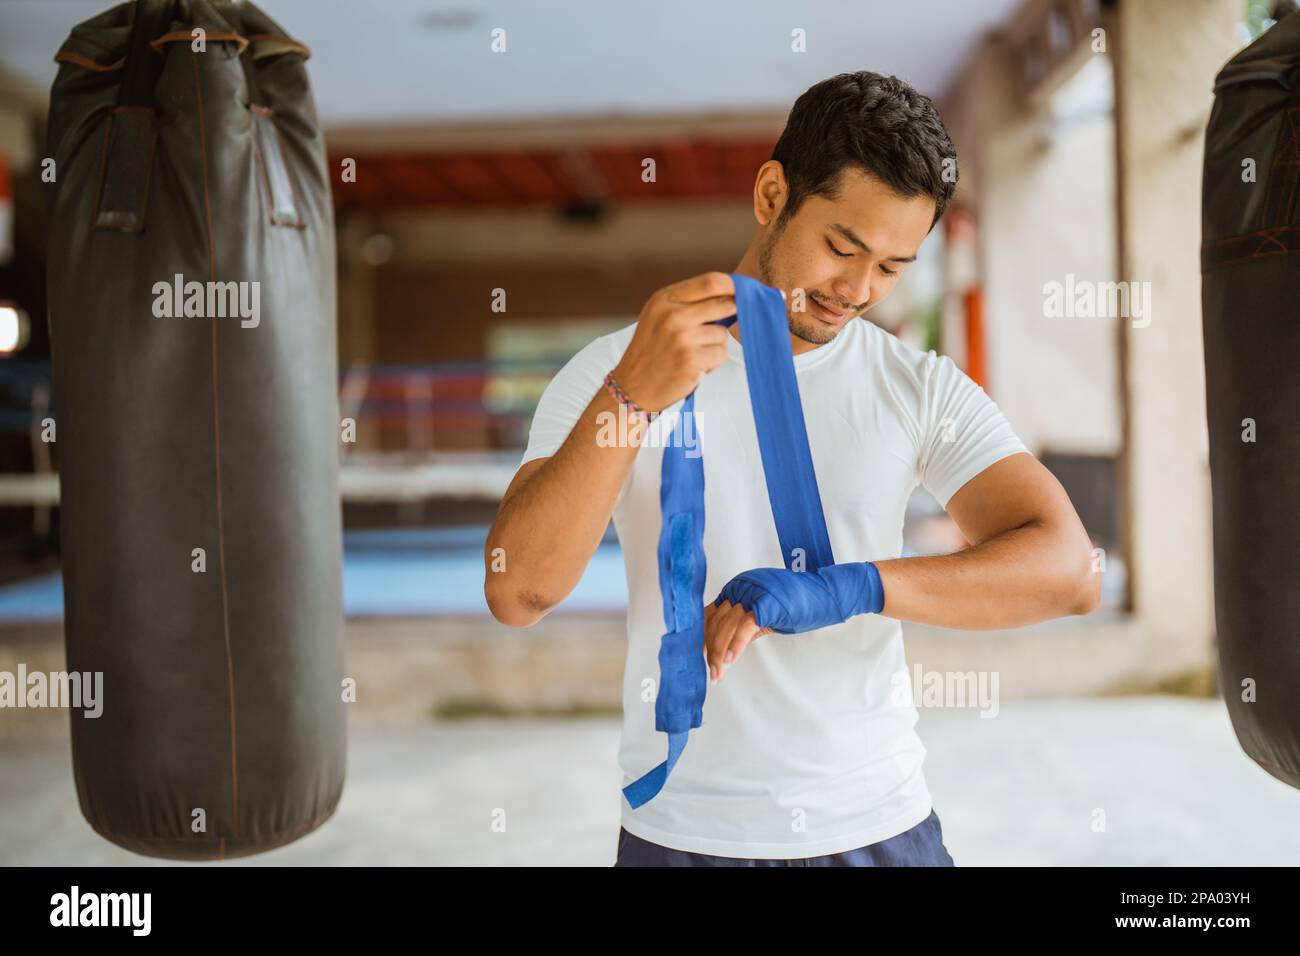 Ein asiatischer Boxer, der Boxhandschuhe trägt, während er im Ring steht Stockfoto